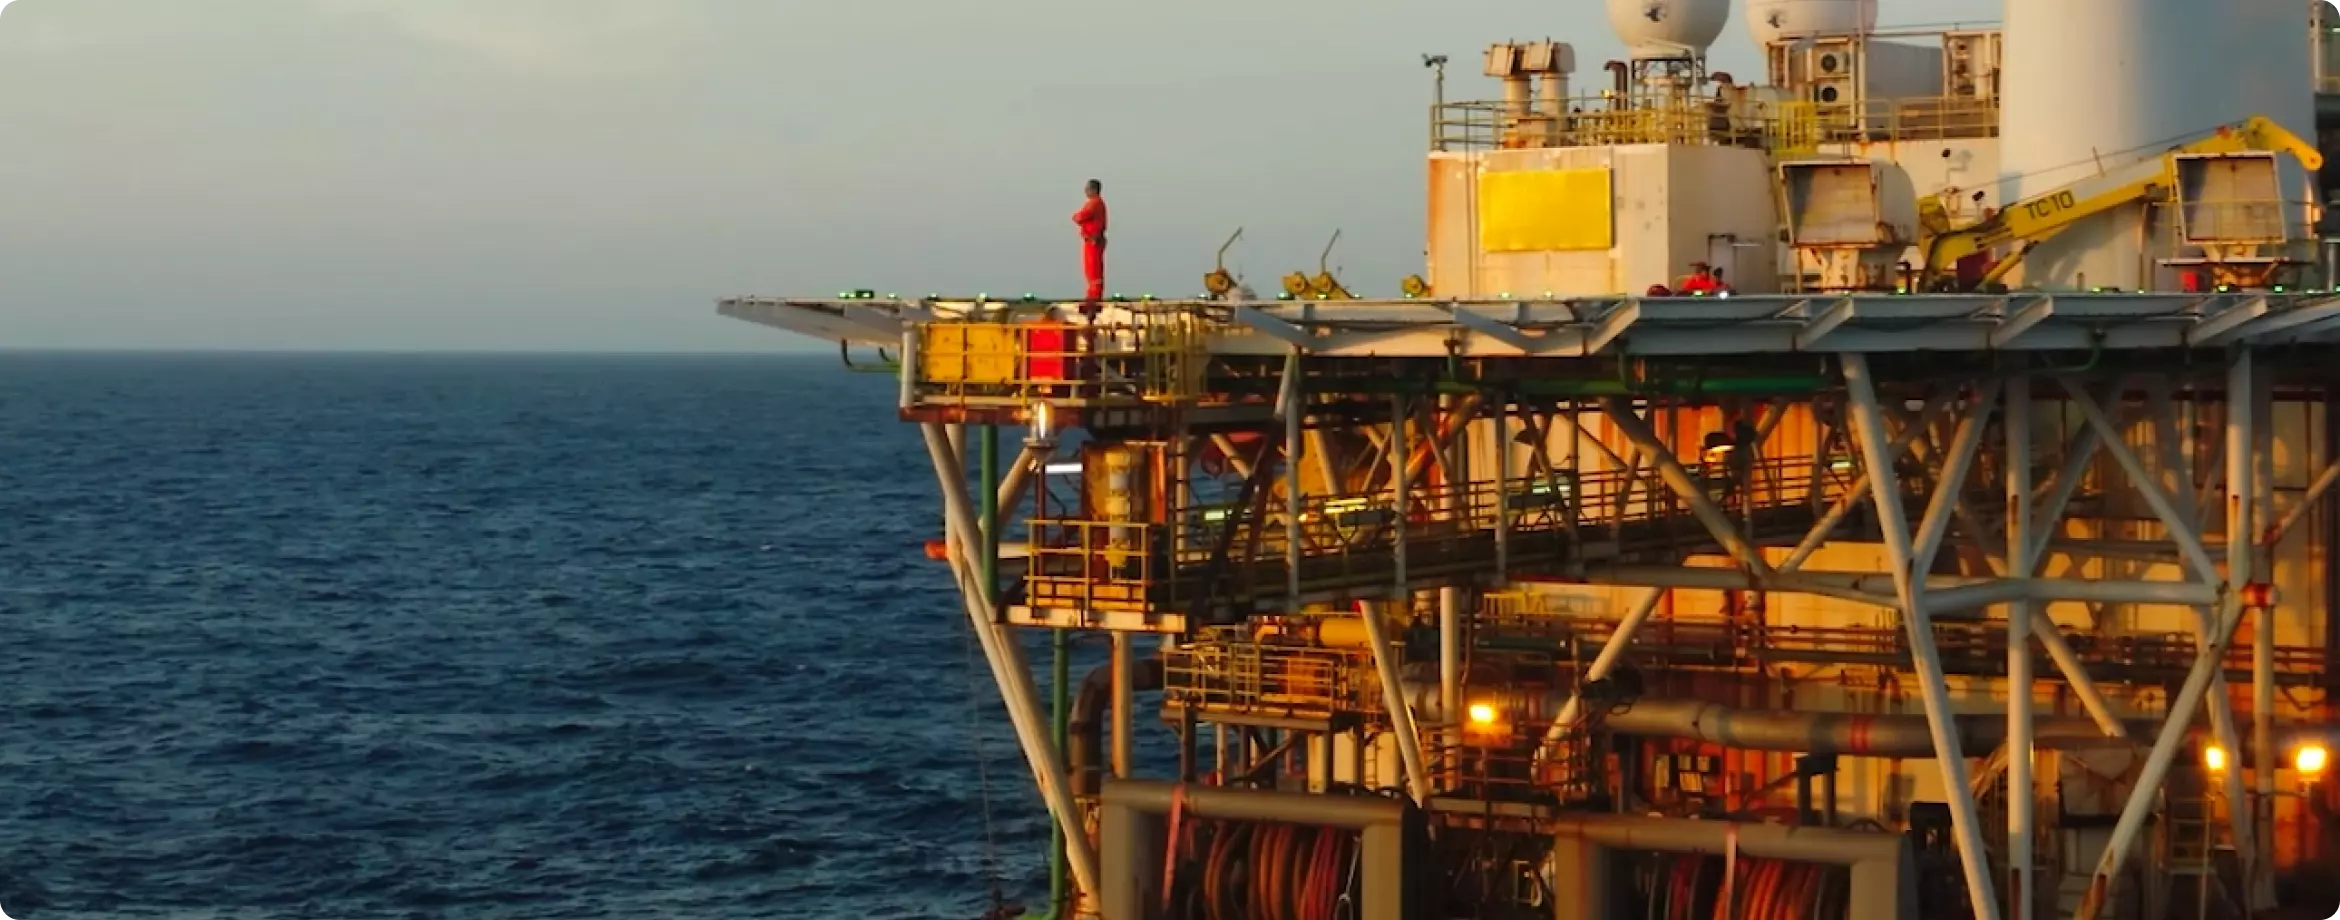 Imagem da ponta da plataforma de petróleo da PRIO com um trabalhador de pé nela observando o mar